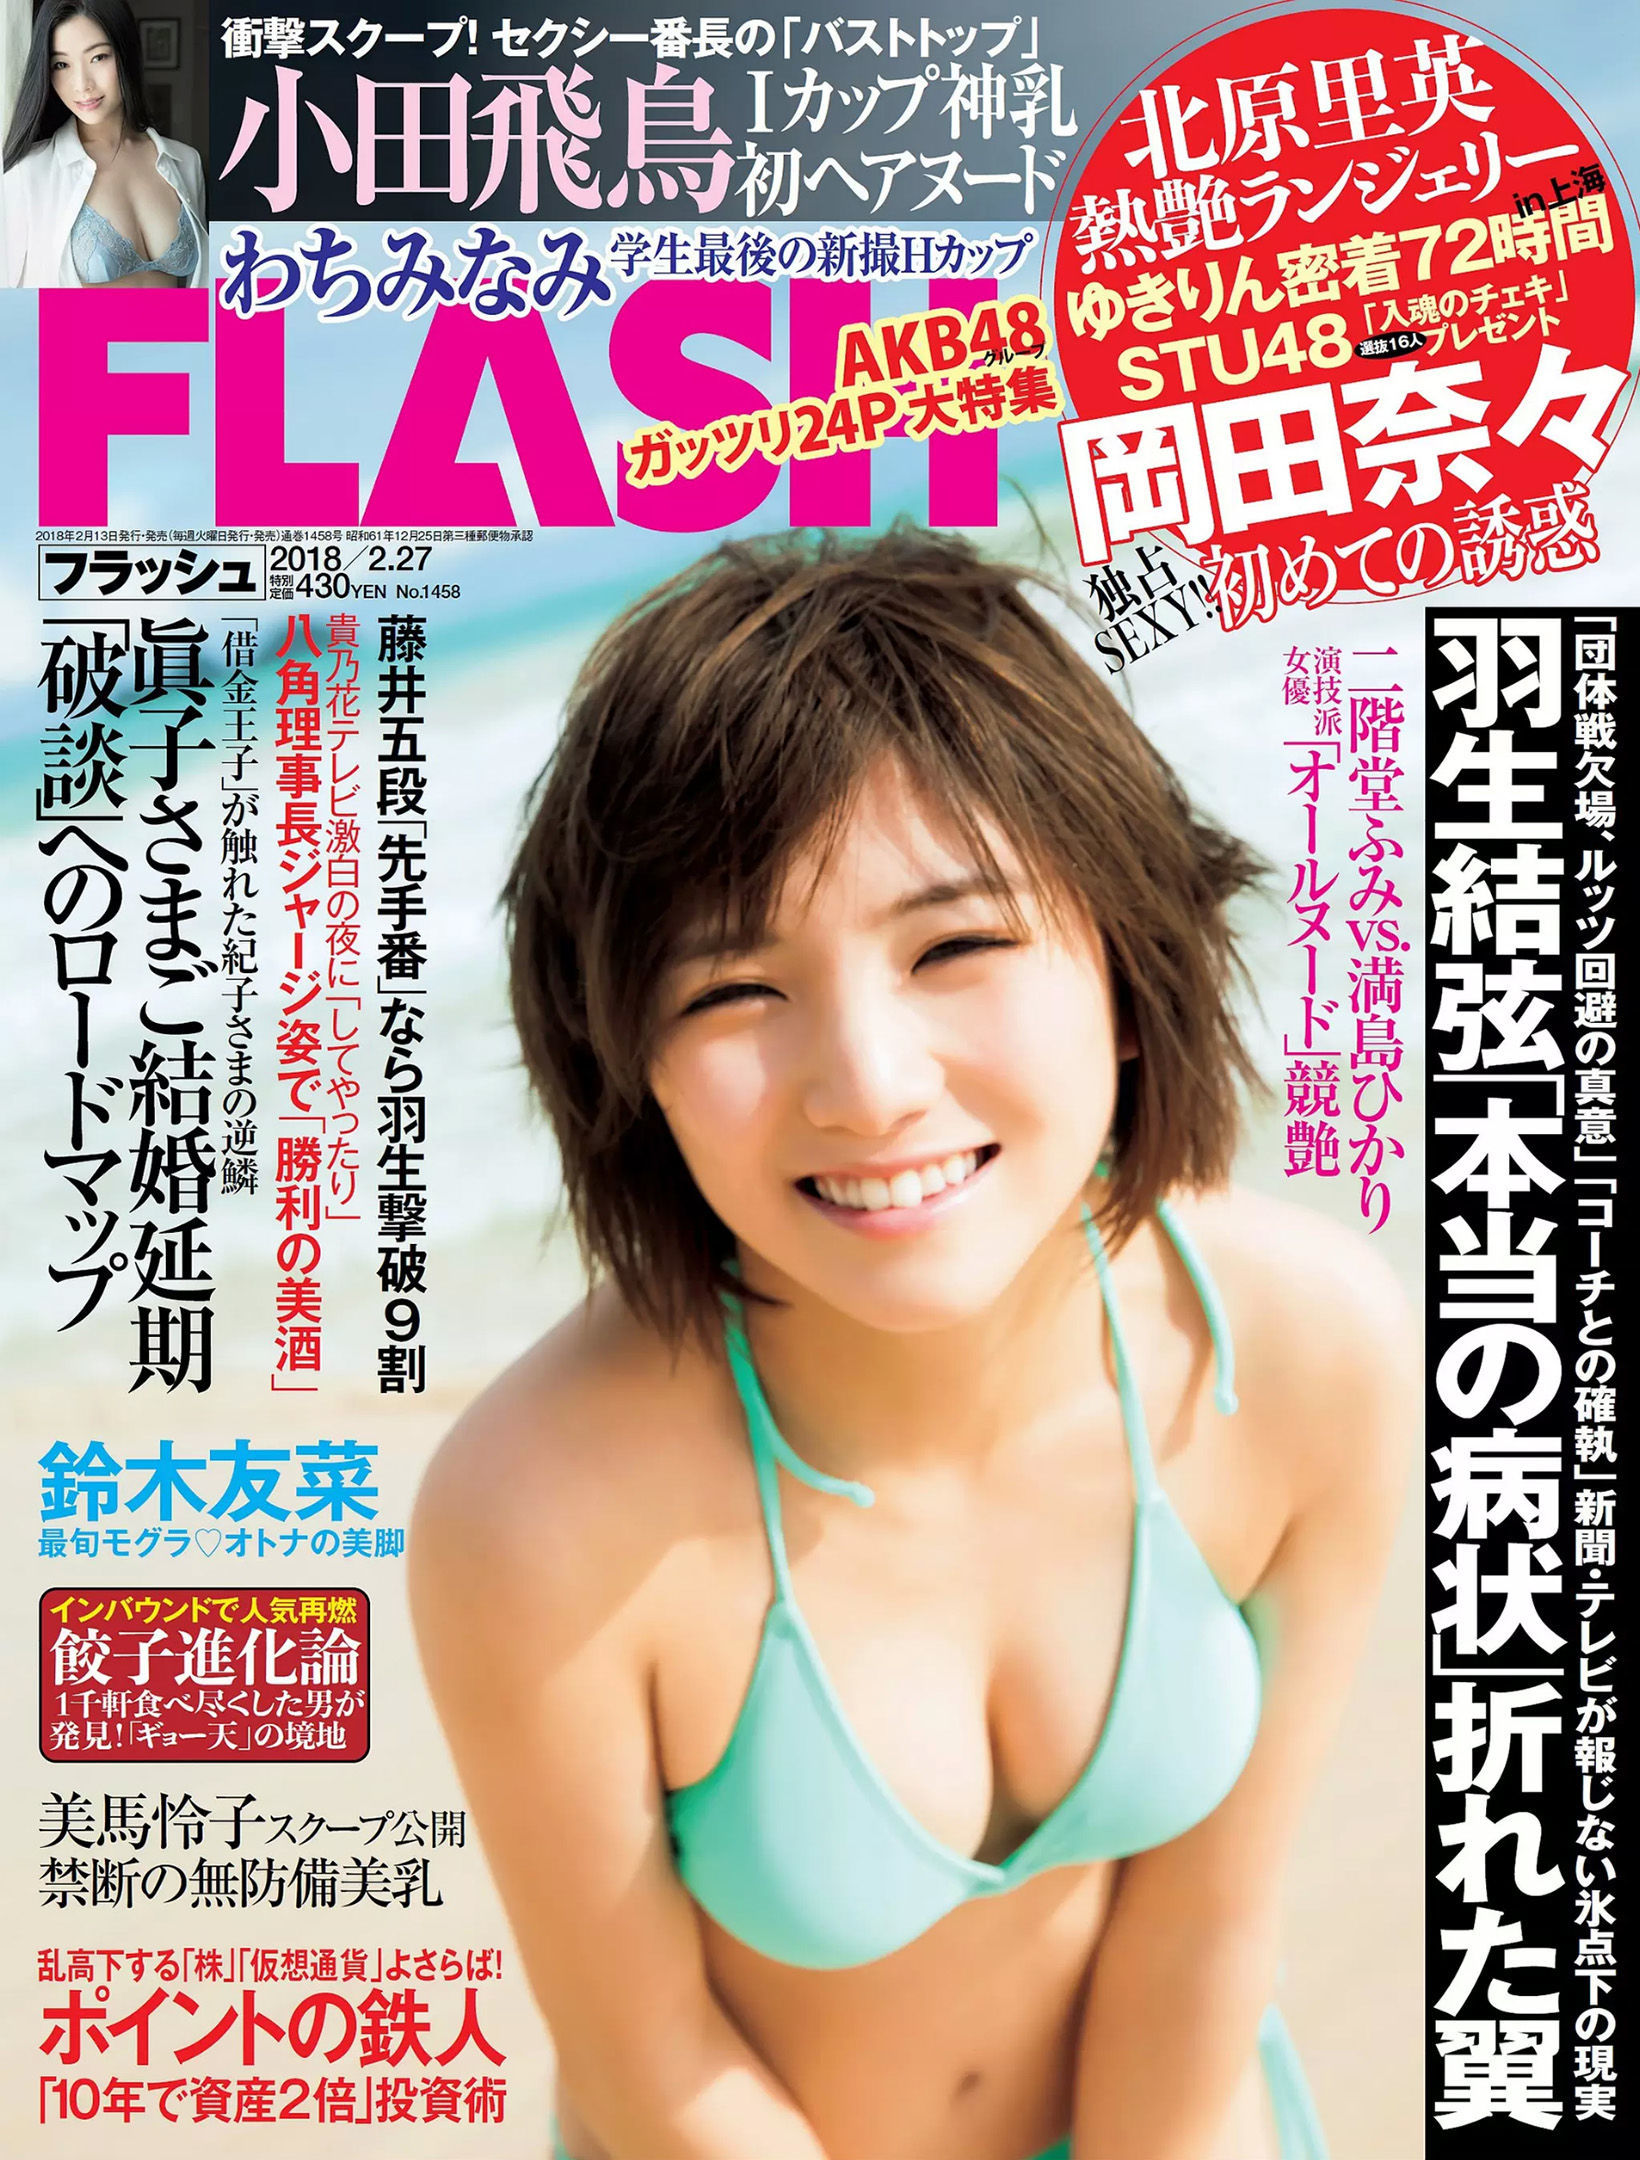 [FLASH]杂志:冈田奈奈无水印写真作品免费在线(27P)